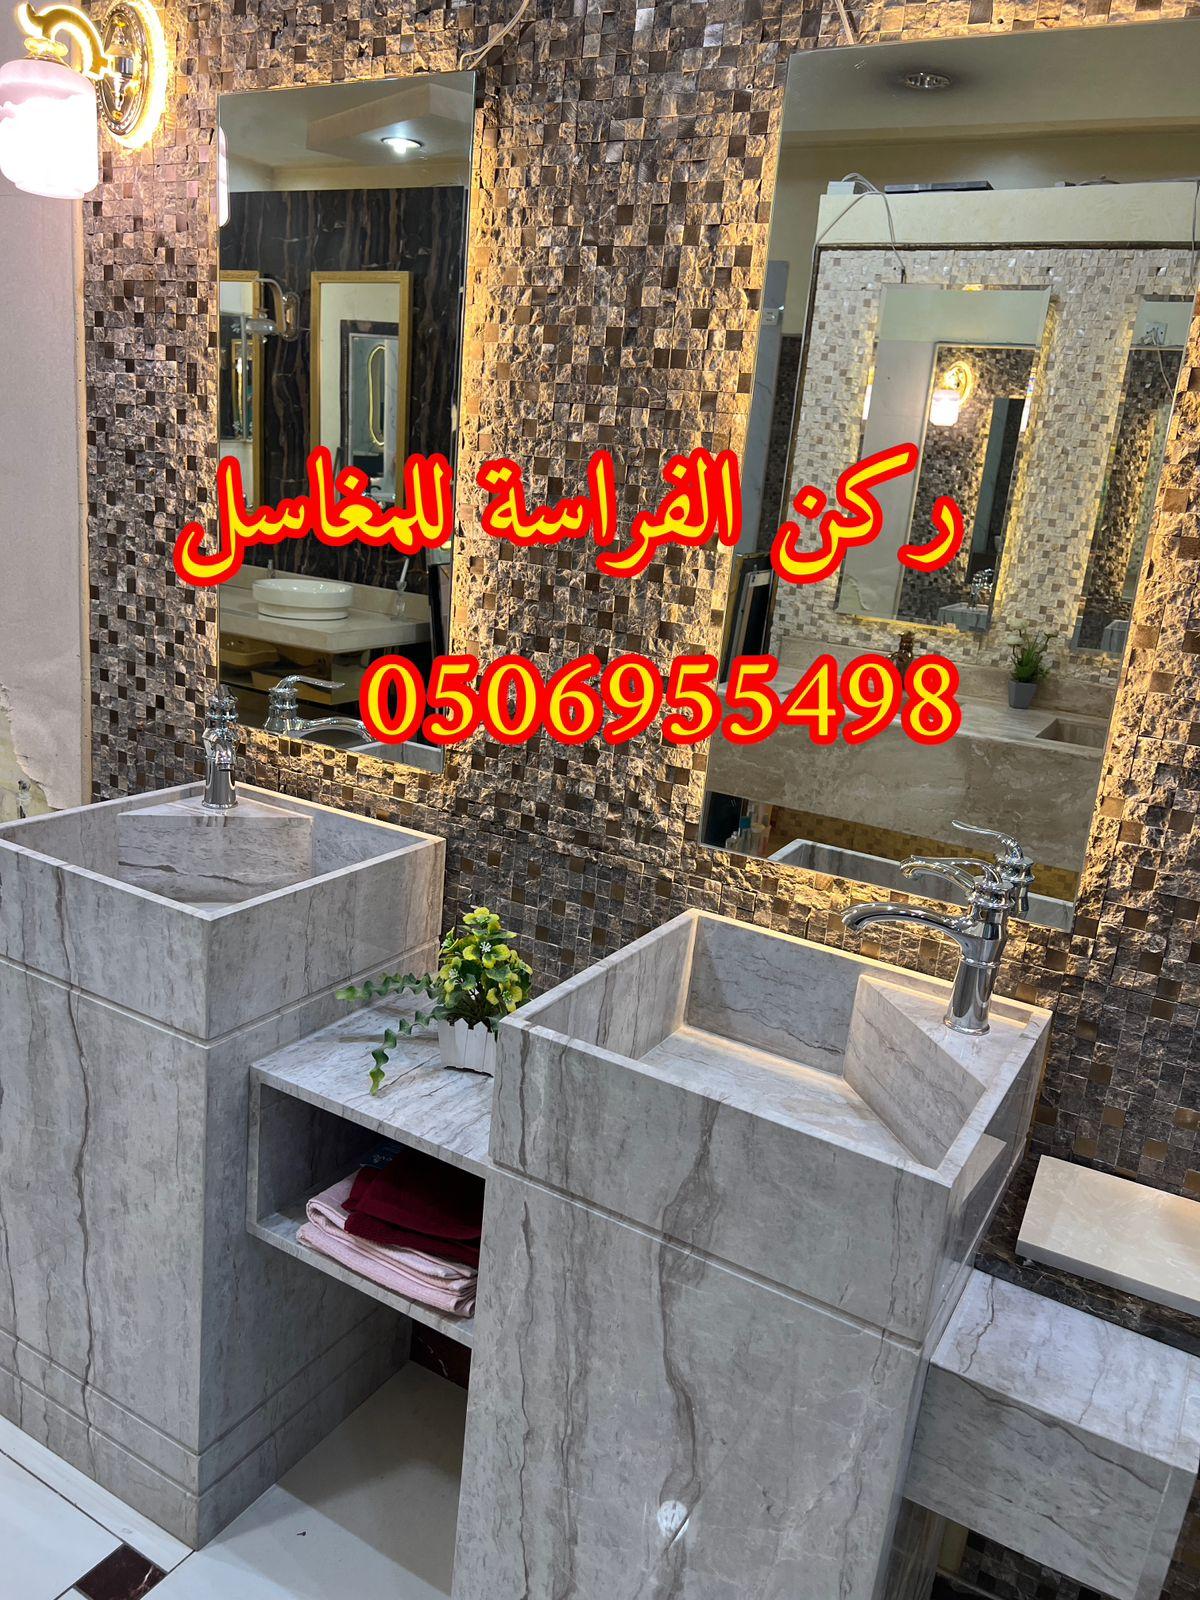 الرياض - مغاسل حمامات رخام مودرن فخمة في الرياض,0506955498 392695765